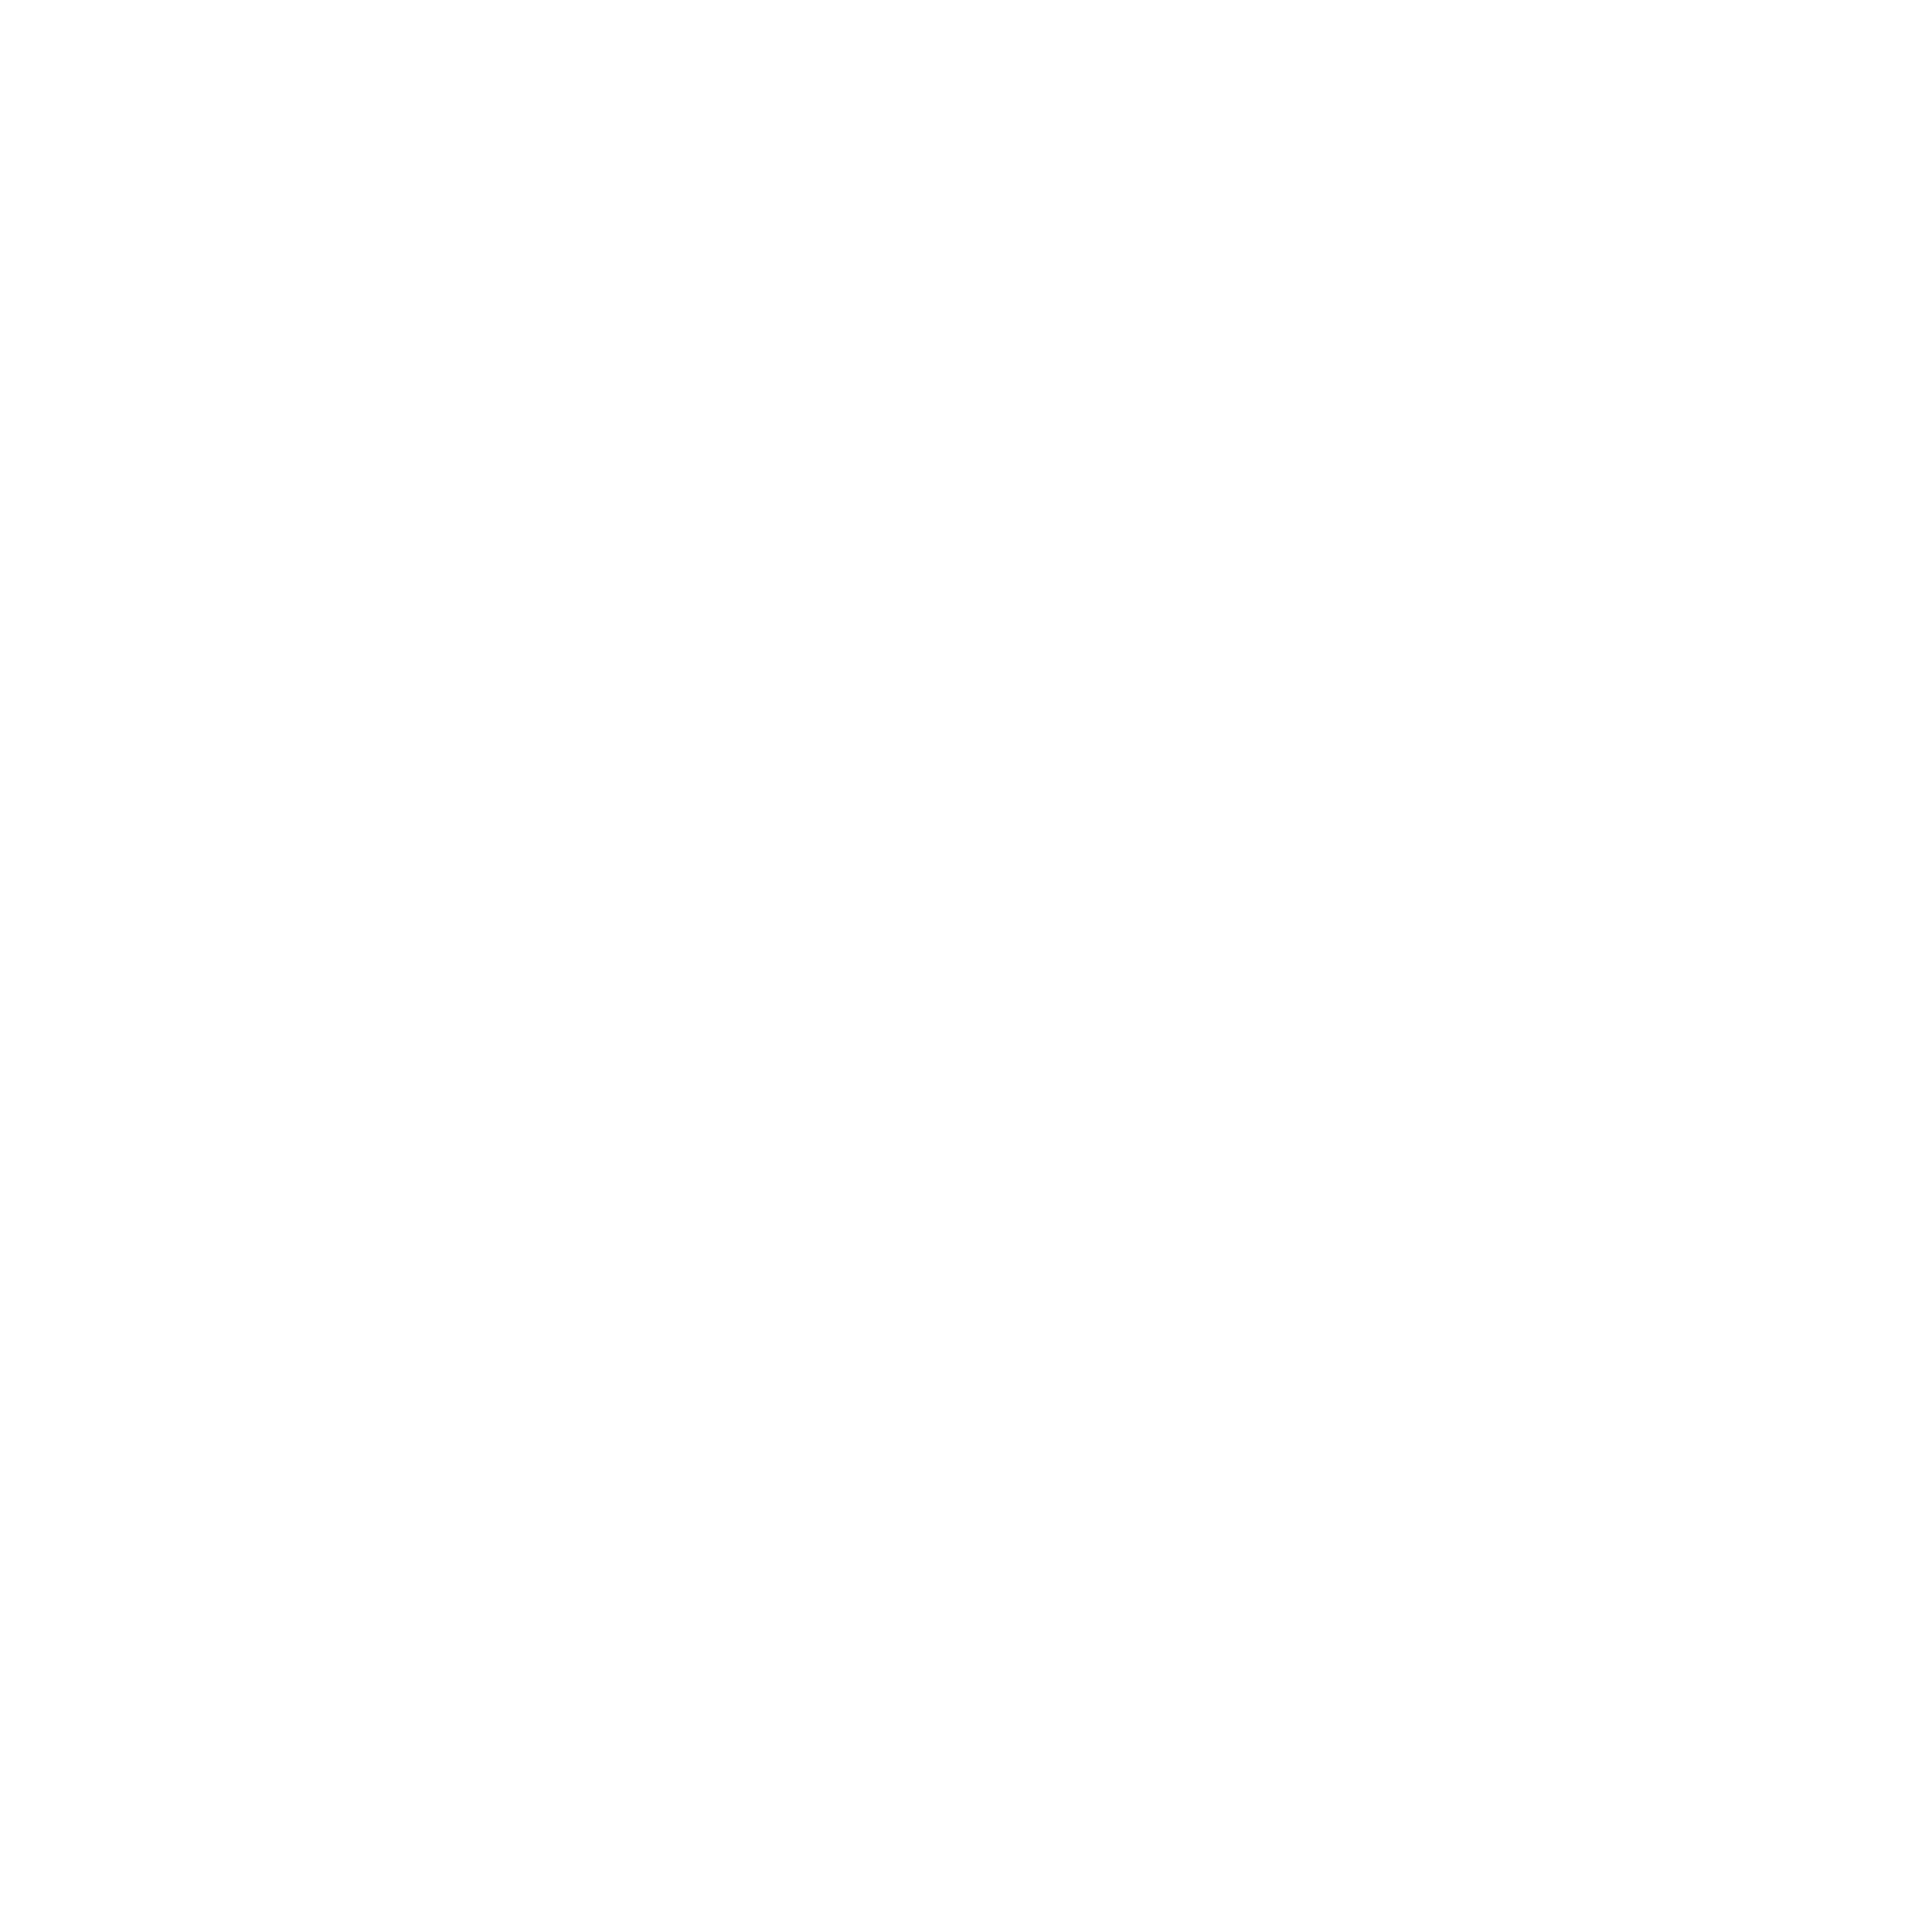 Gordon Becker Photography